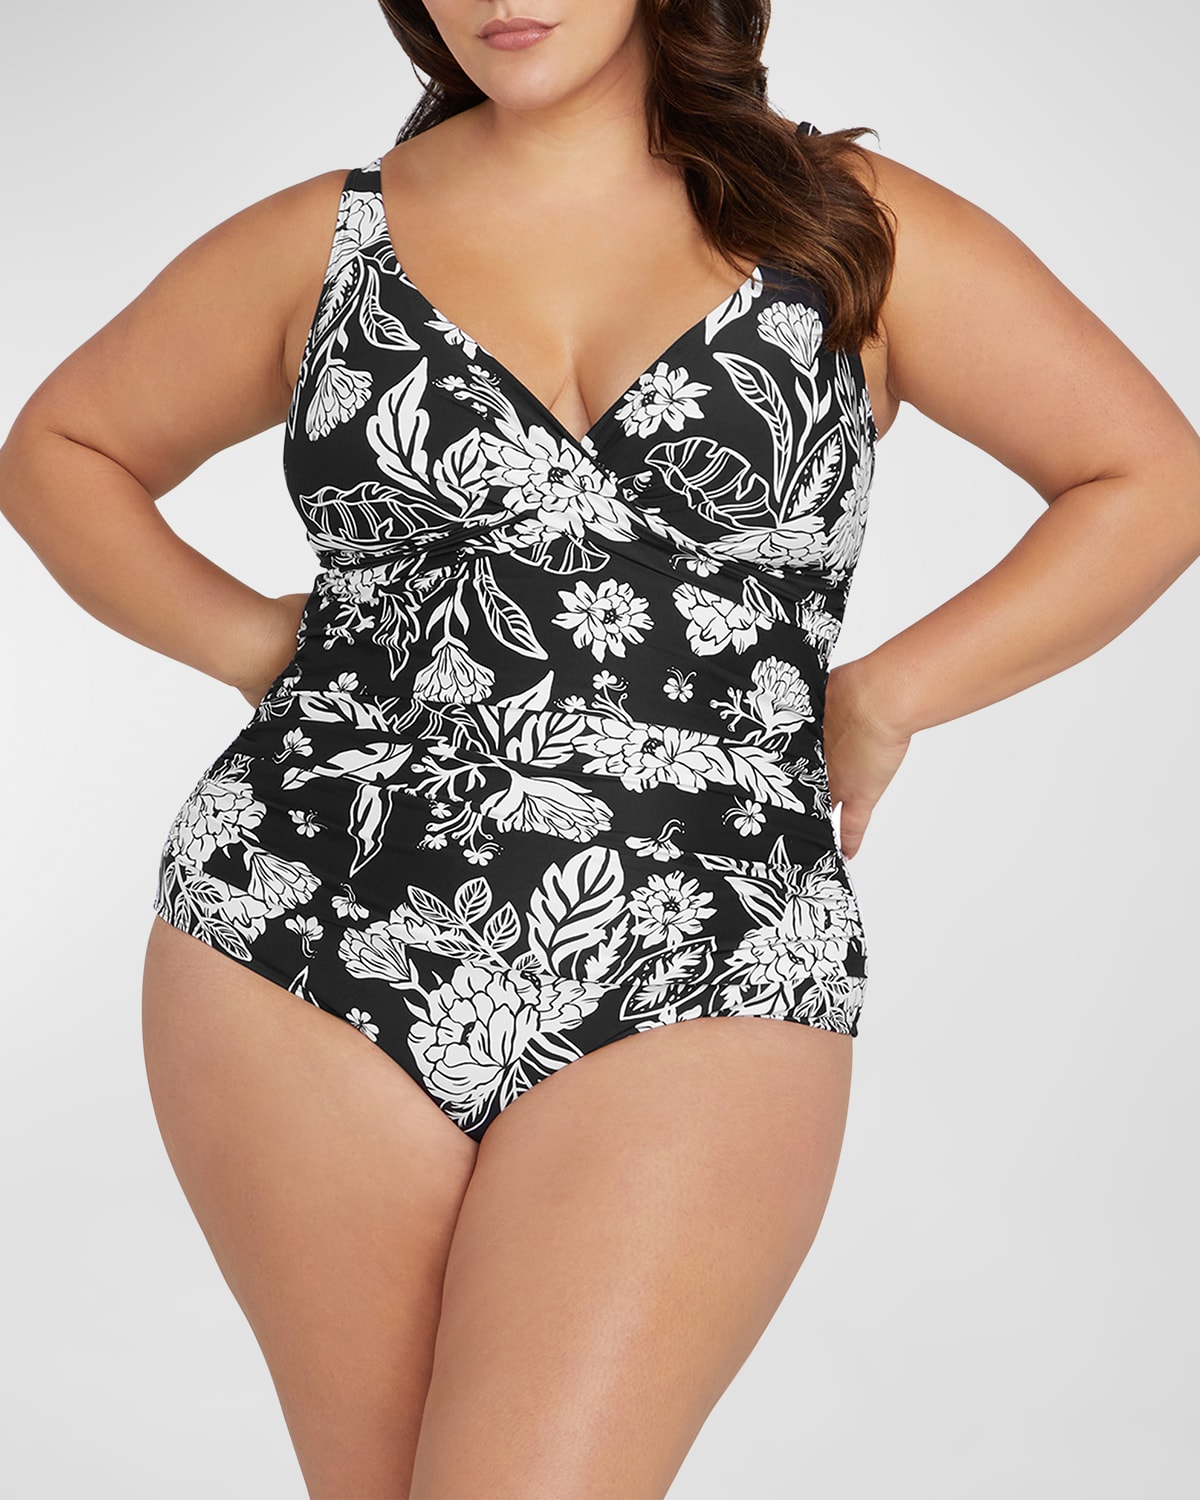 Artesands Plus Size Delacroix One-Piece Swimsuit